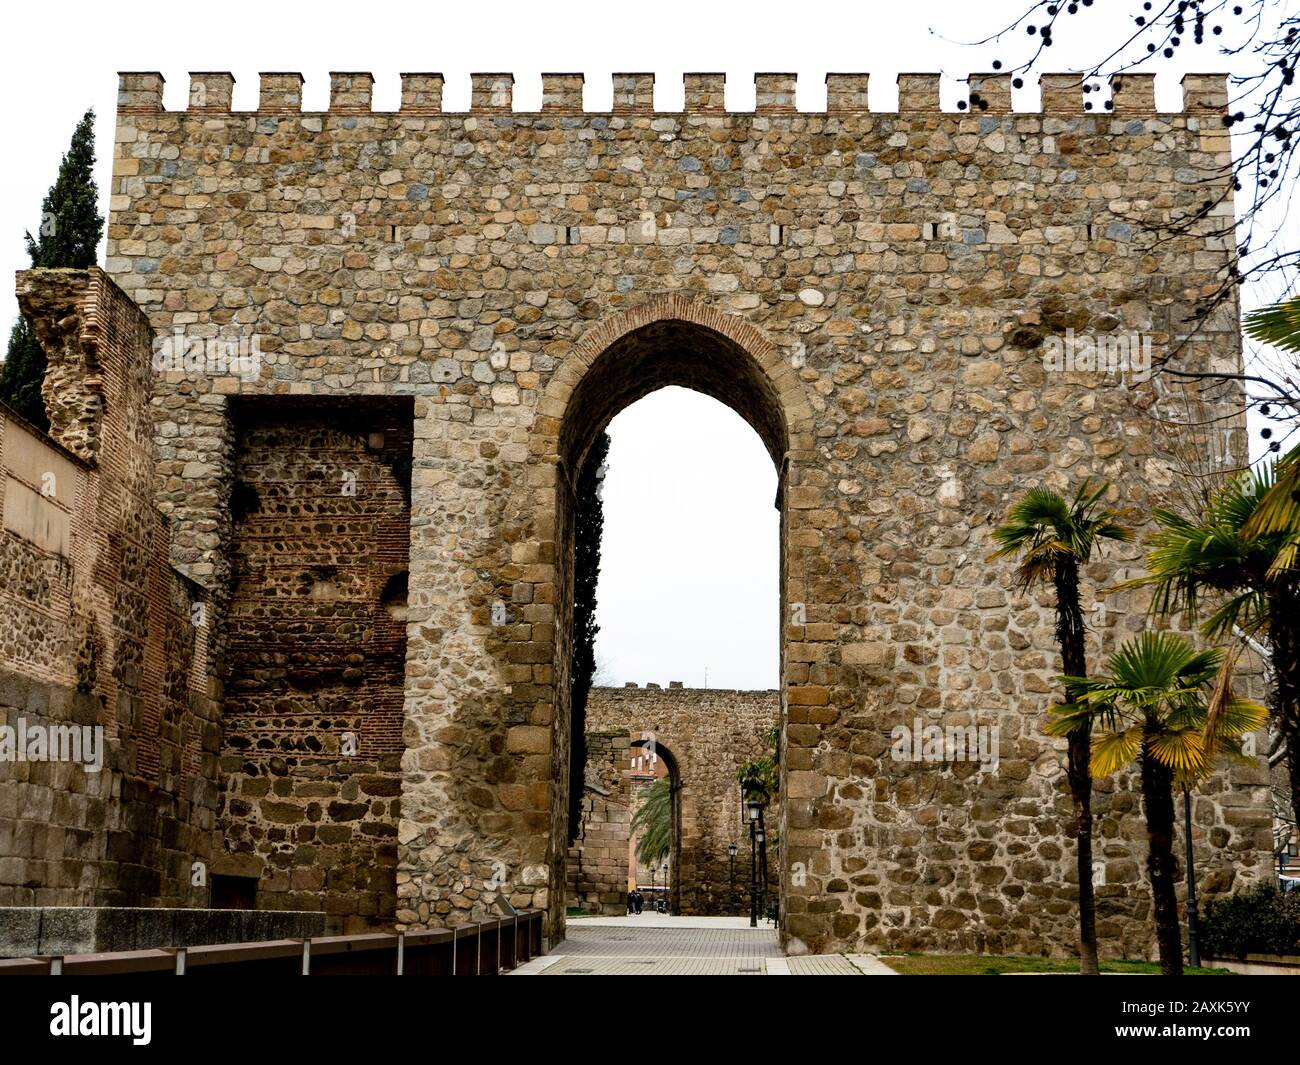 Albarran, alter Turm der Befestigungsmauern von Talavera de la Reina. Die heutigen Wälle sind auf das IX. Jahrhundert datiert, wurden aber über alten römischen Wällen errichtet. Stockfoto